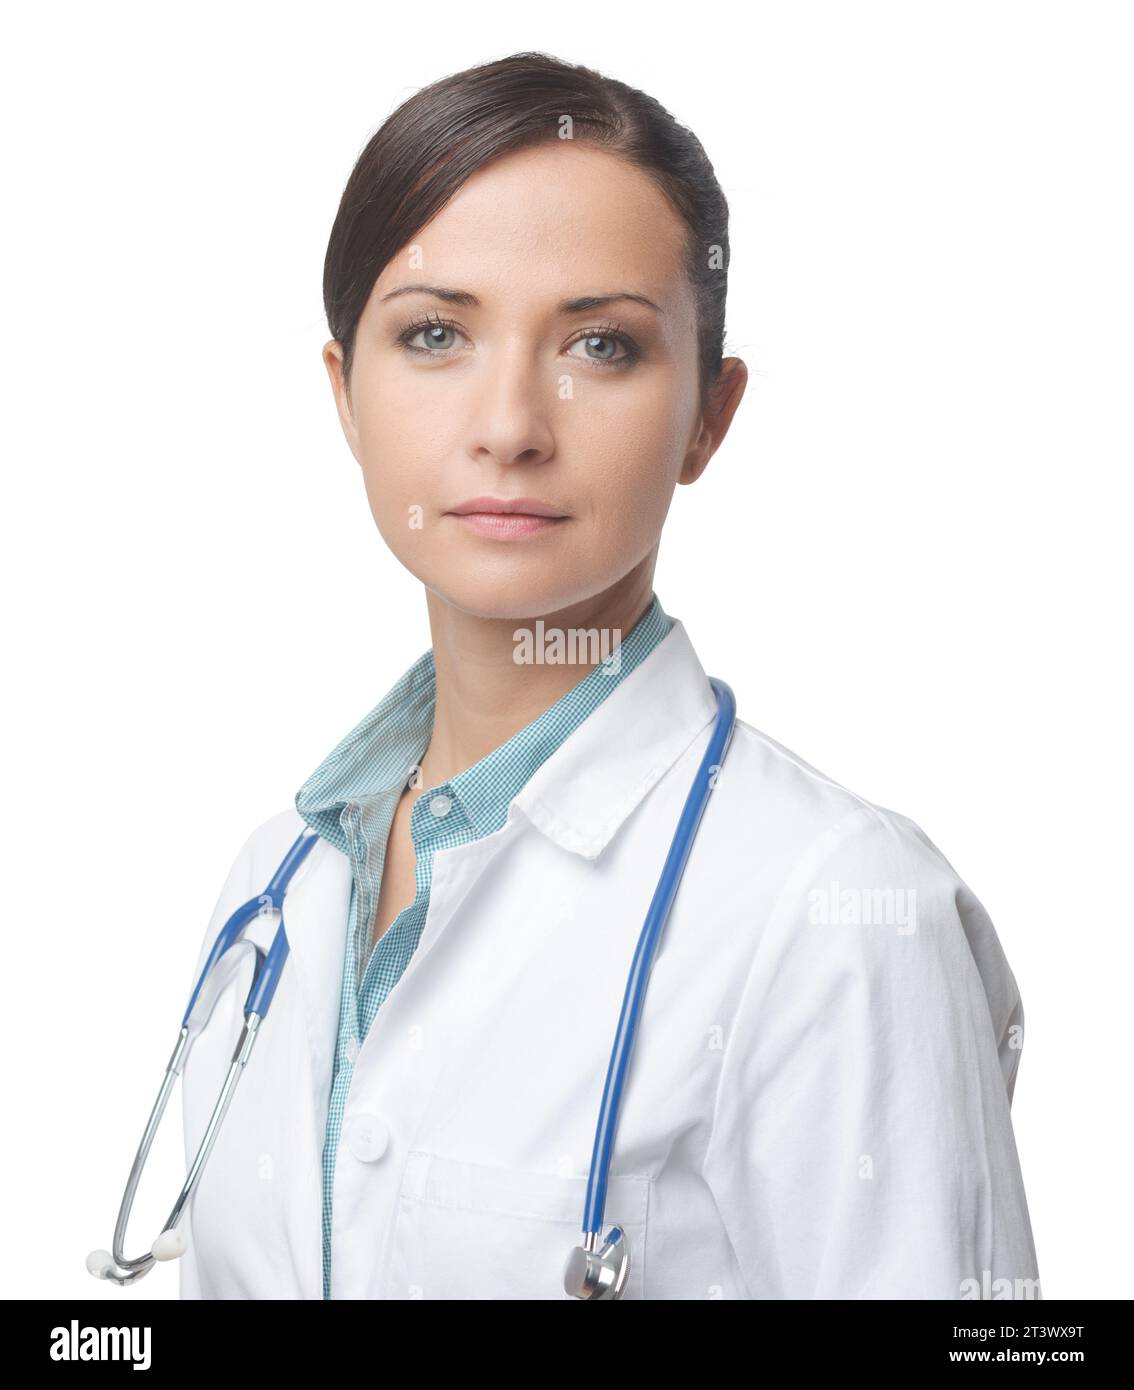 Zuversichtlich Lächeln Ärztin posiert mit Kittel und Stethoskop. Stockfoto